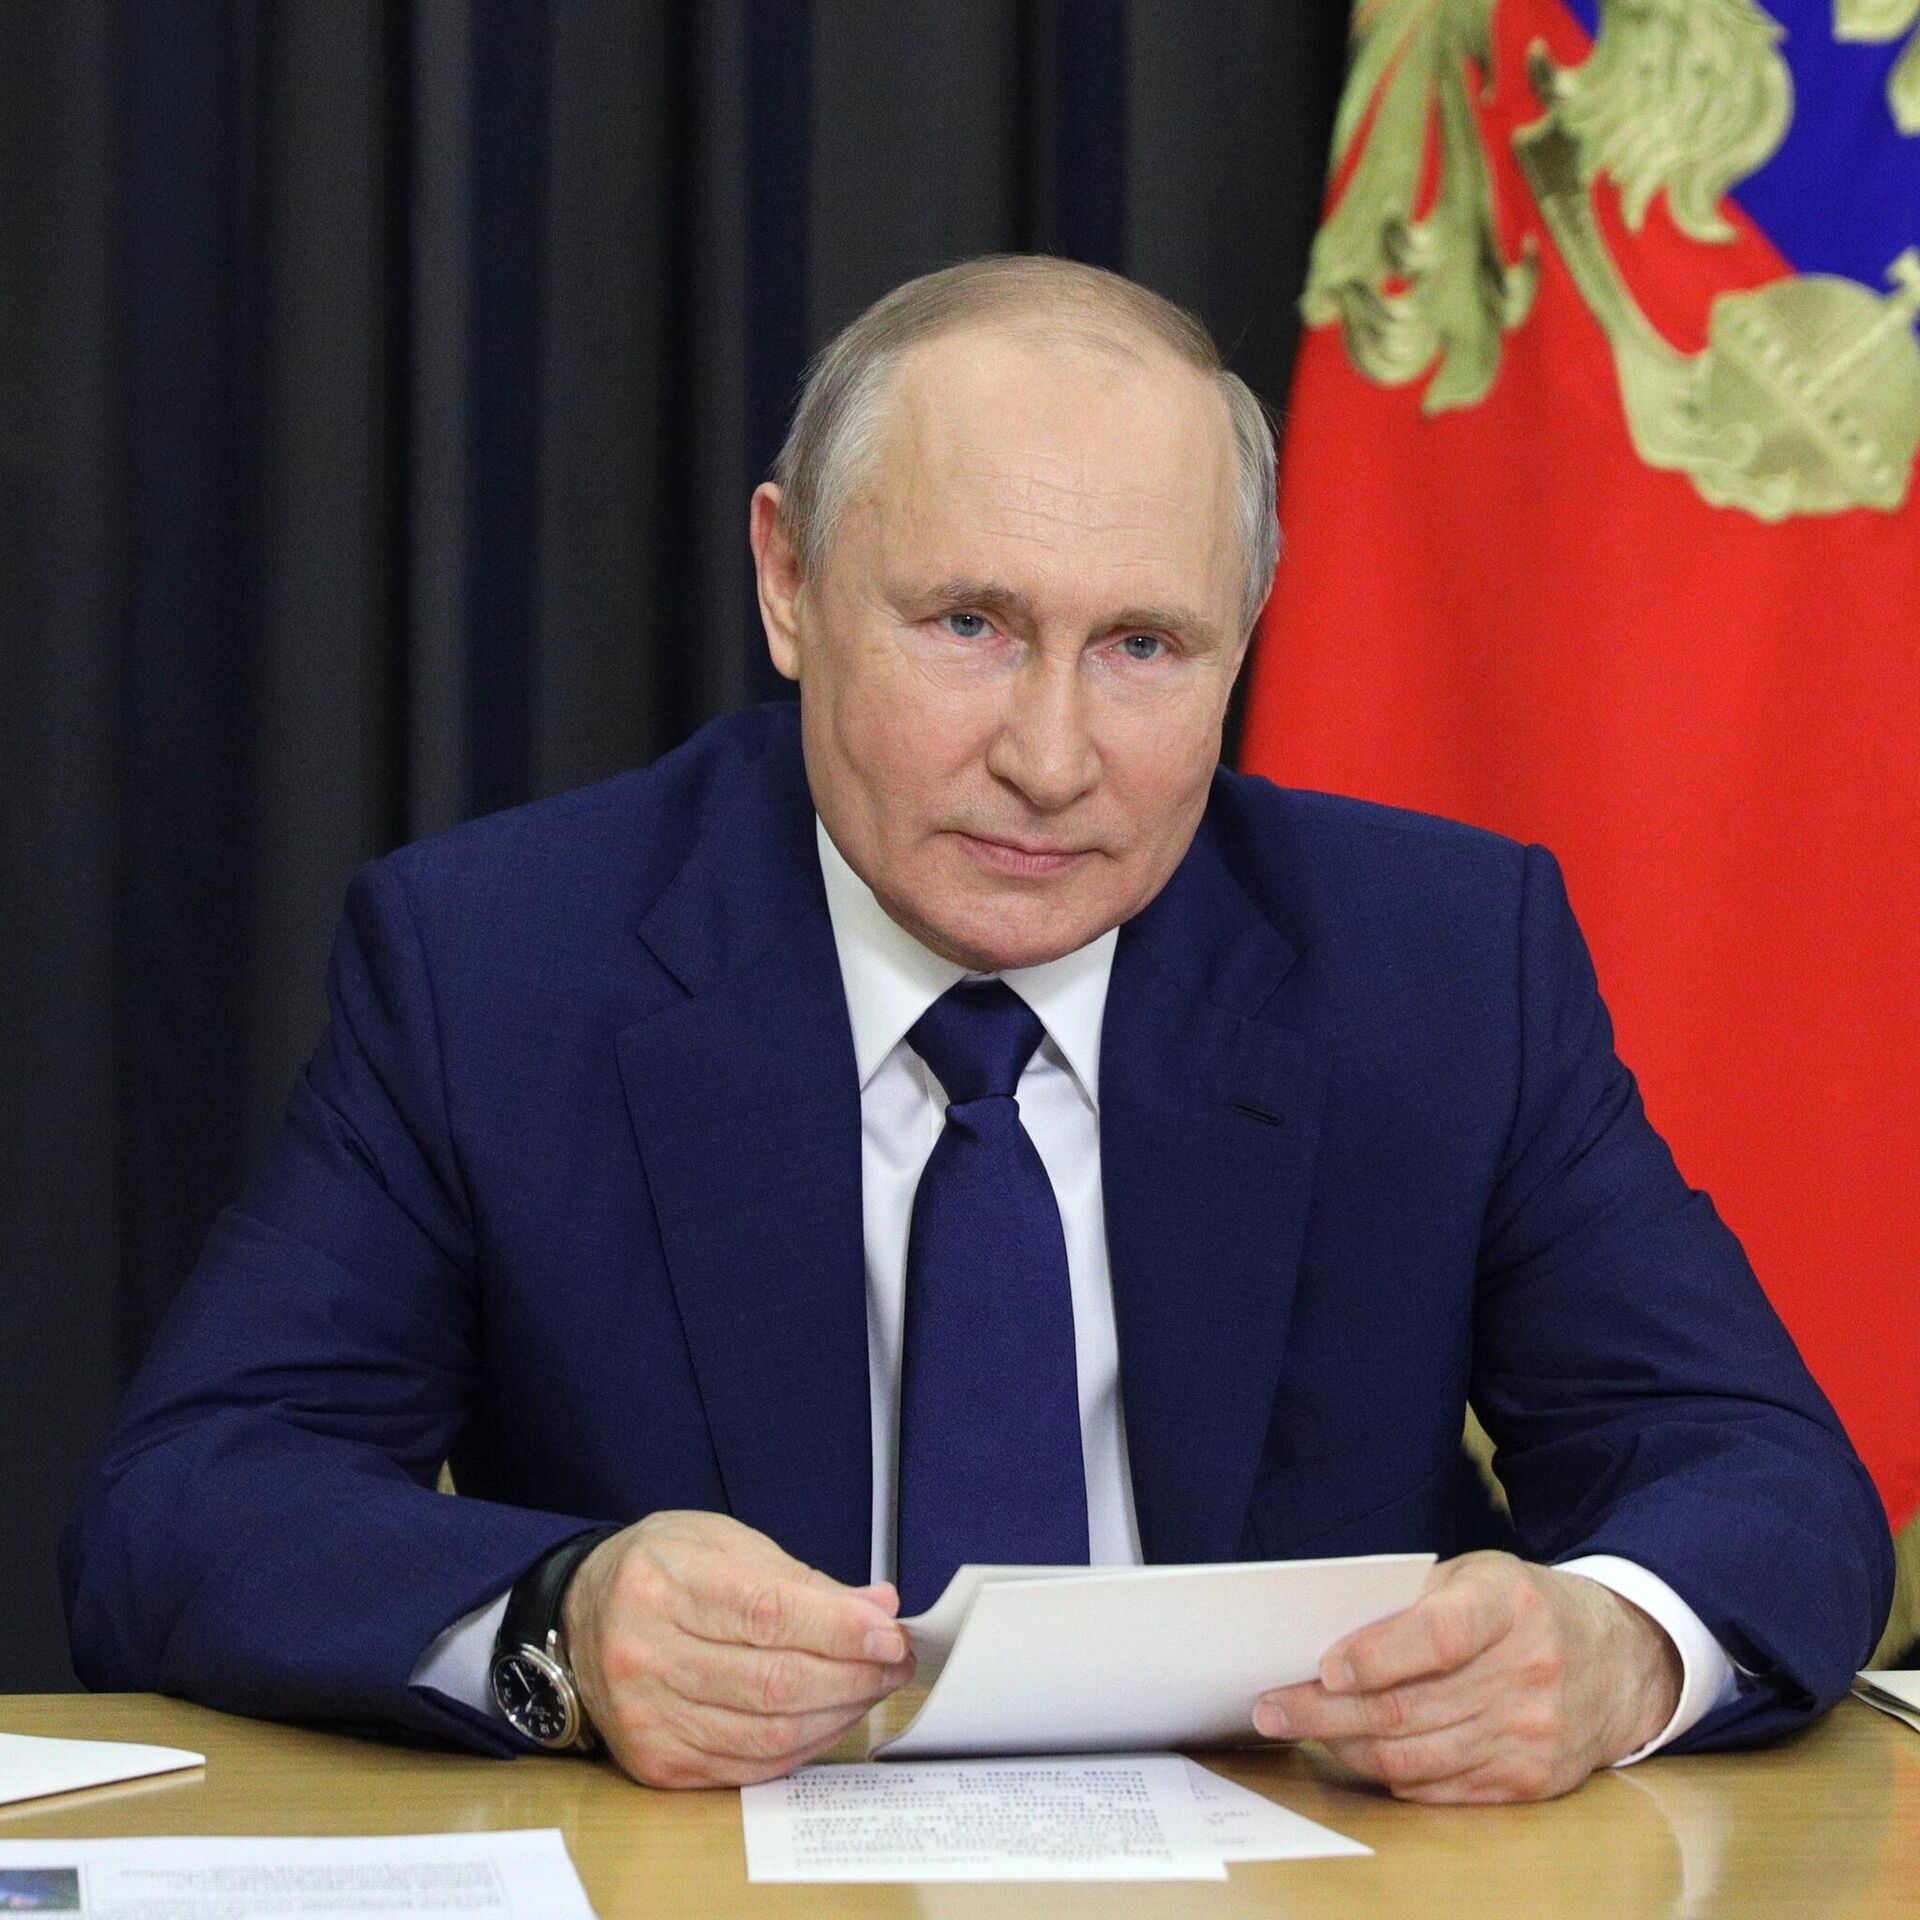 Прямая линия с президентом российской федерации. Фото президента России.